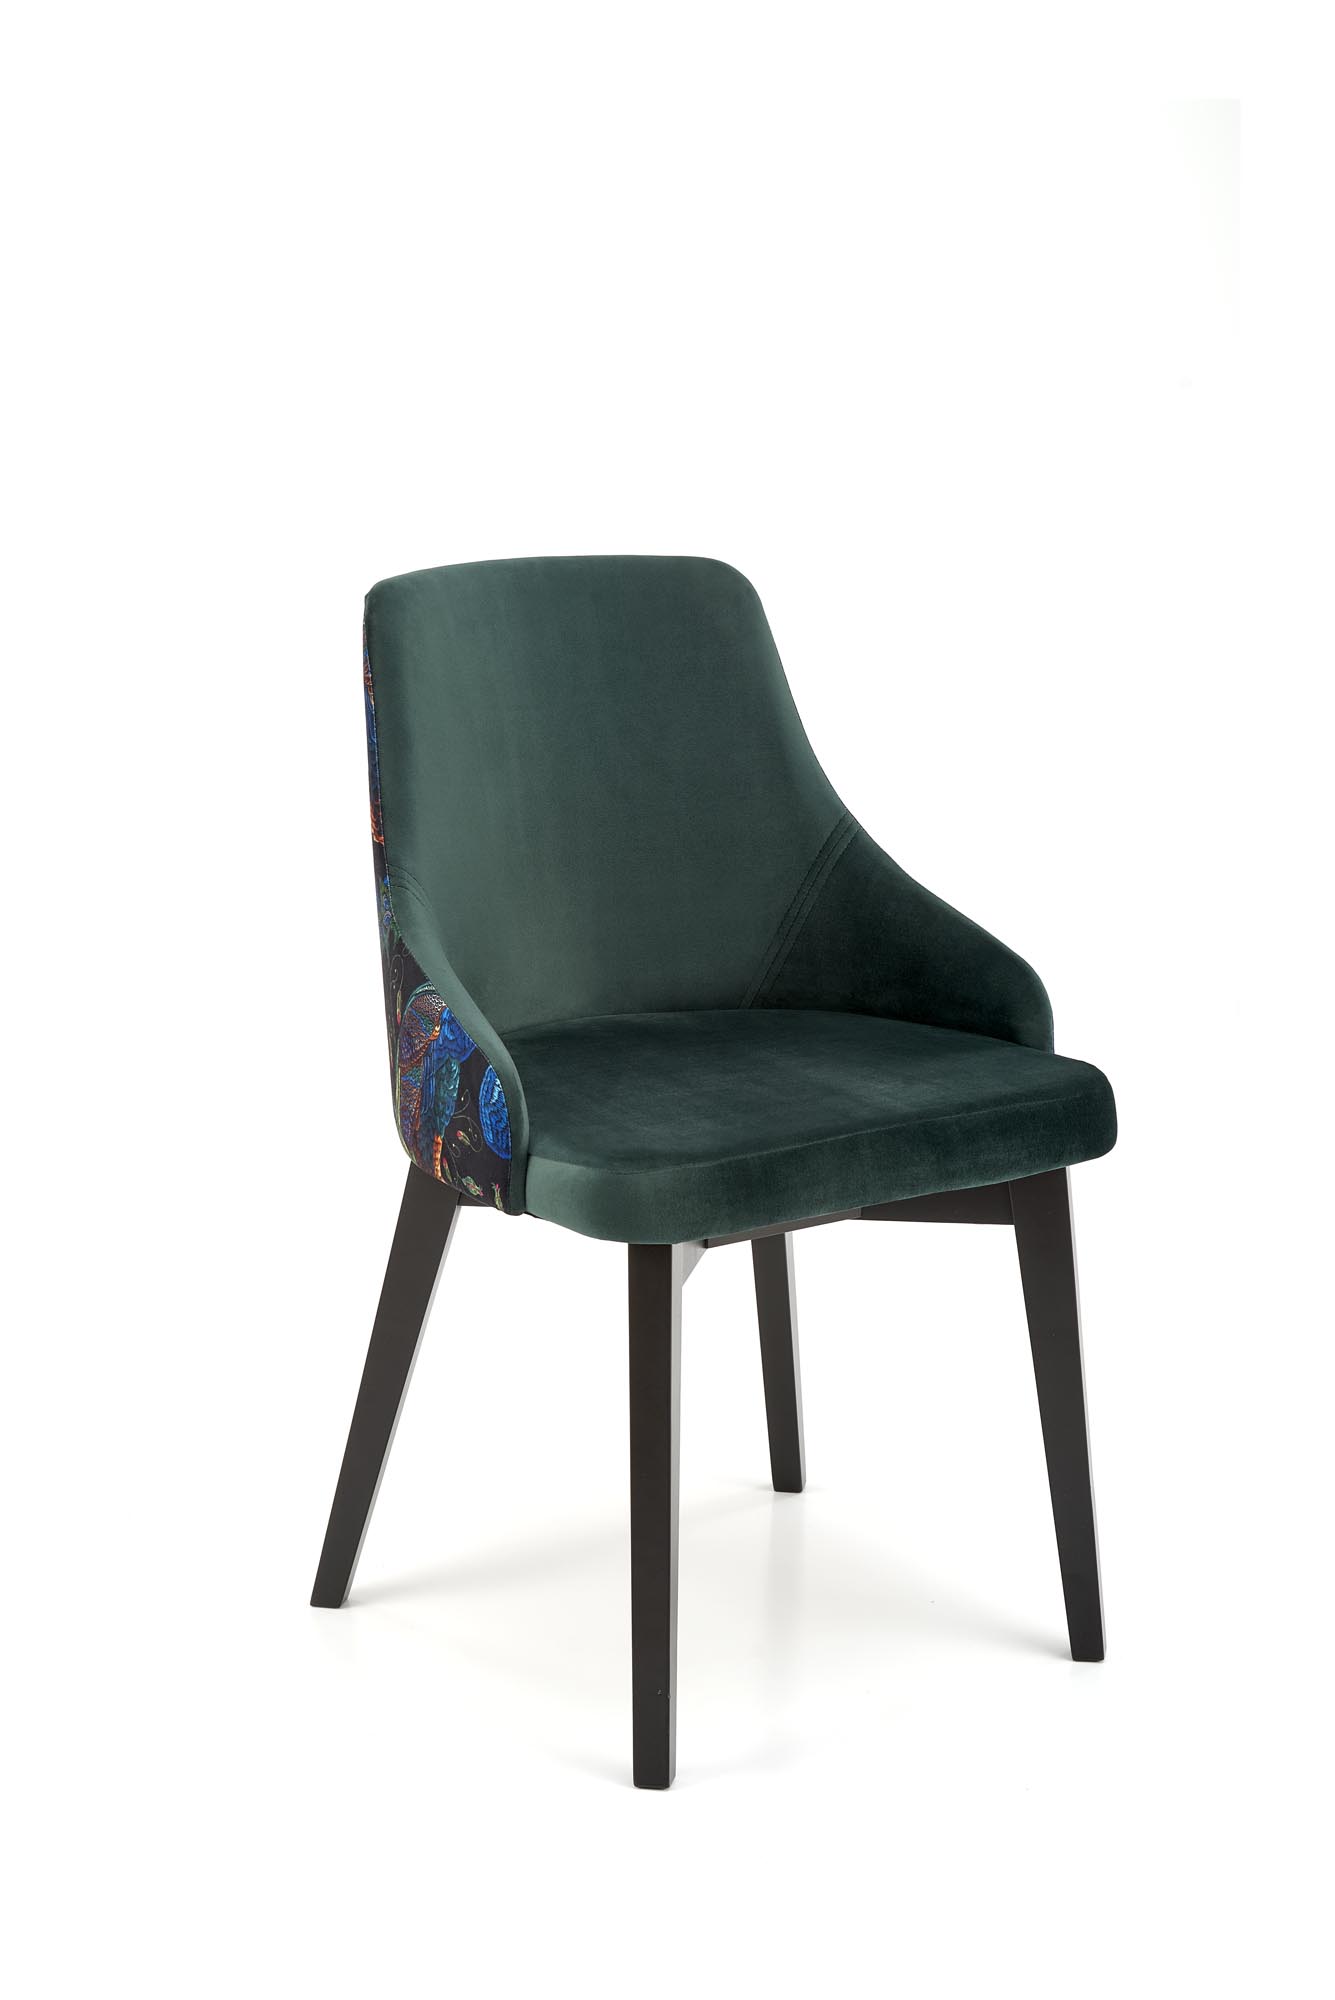 Scaun tapițat ENDO - negru / tap: BLUVEL 78 c. Verde Židle čalouněné endo - Černý / tmavý Zelený